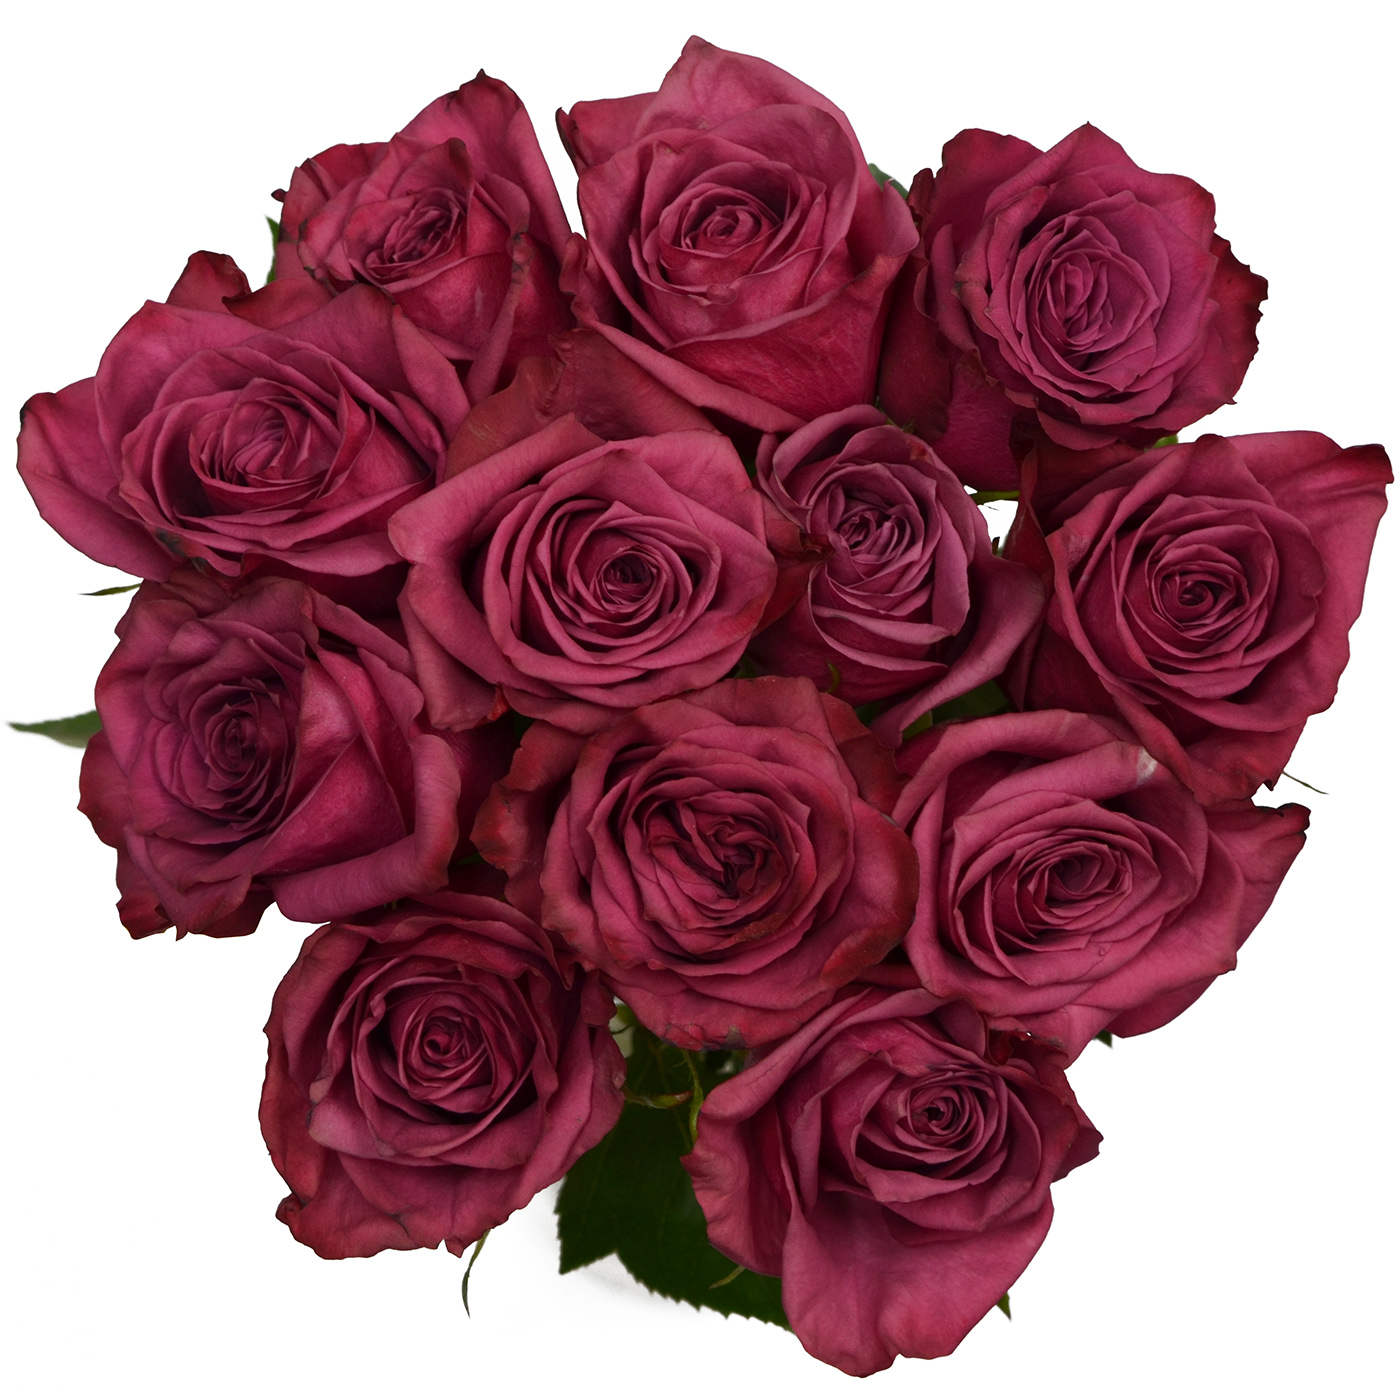 Tổng hợp hình ảnh hoa hồng tím đẹp nhất - [Kích thước hình ảnh: 1400x1400 px]